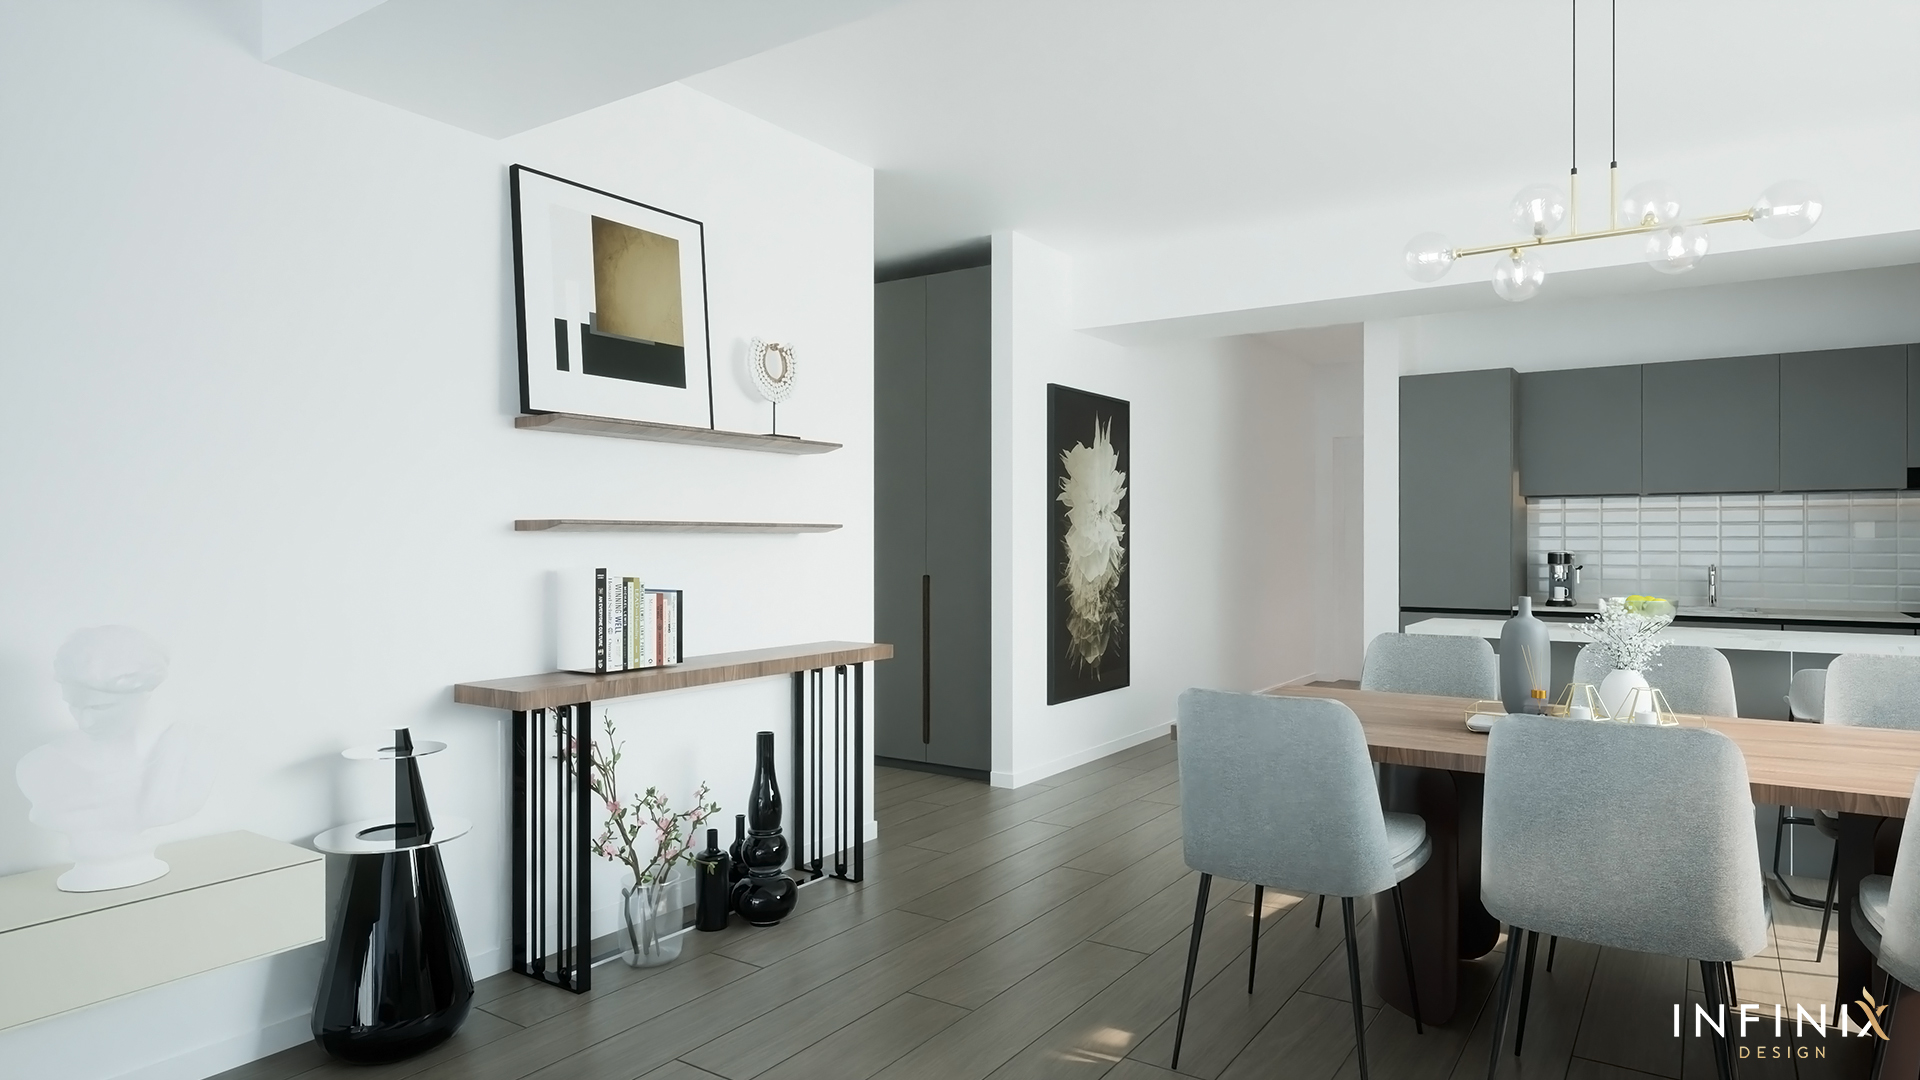 012.15_Infinix_design_interior_apartament